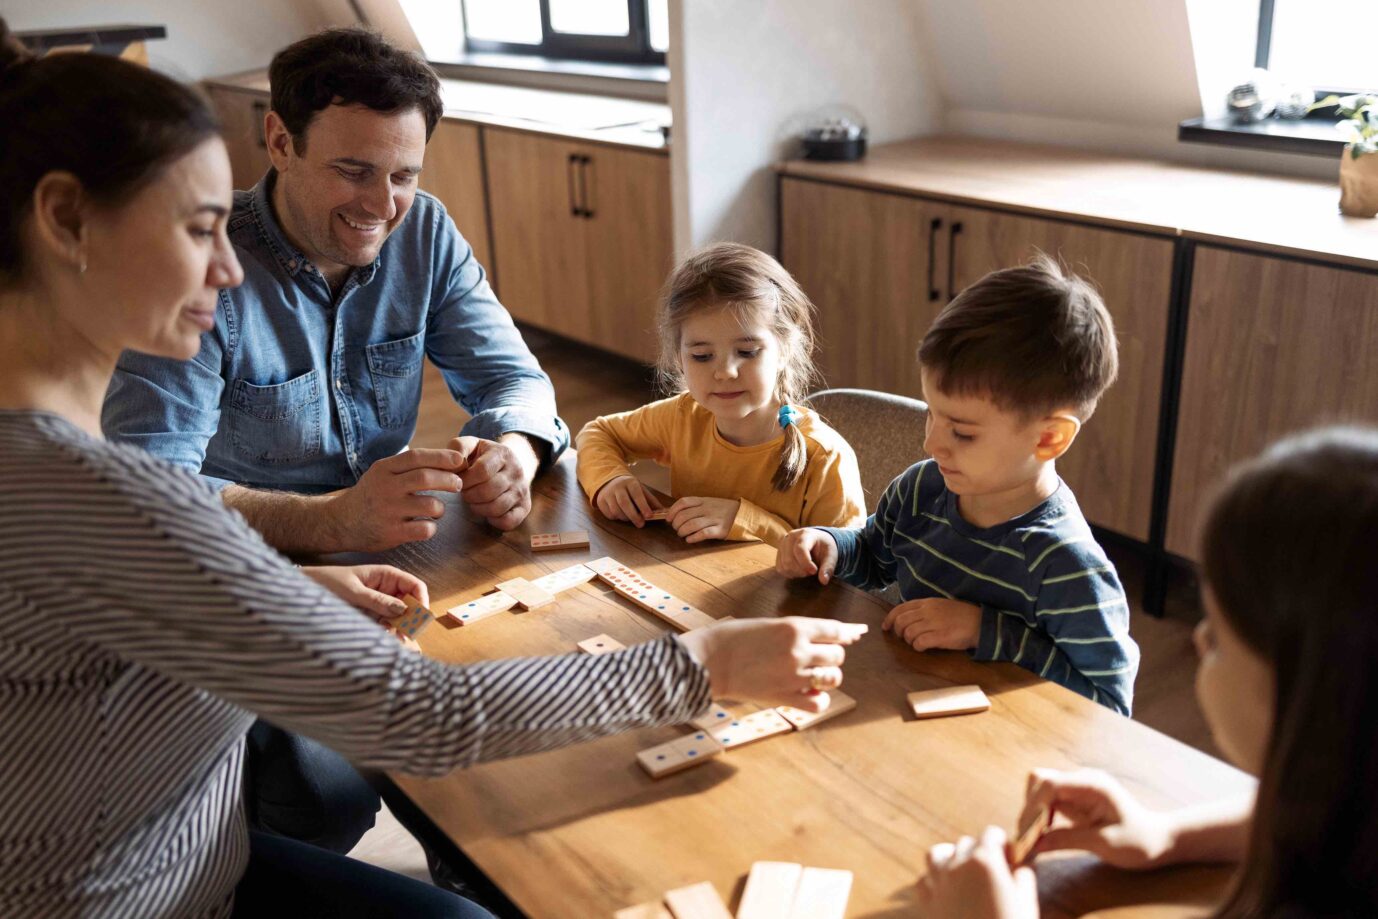 Mutter, Vater und Kinder spielen im Corona-Lockdown Domino, während sie im Wohnzimmer in der Nähe des Fensters sitzen. Die Familie verbringt Zeit miteinander.